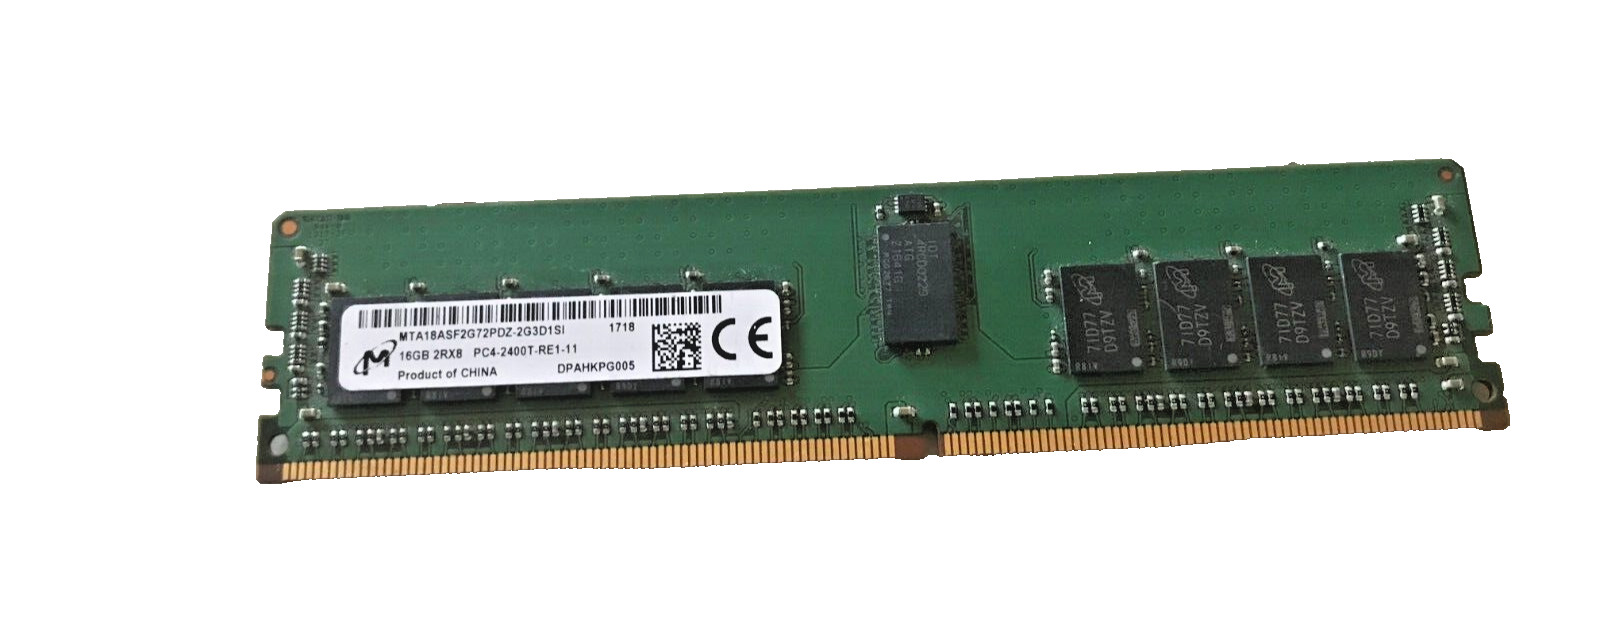 Micron 16GB 2RX8 DDR4-2400MHz RDIMM RAM MTA18ASF2G72PDZ-2G3D1SI